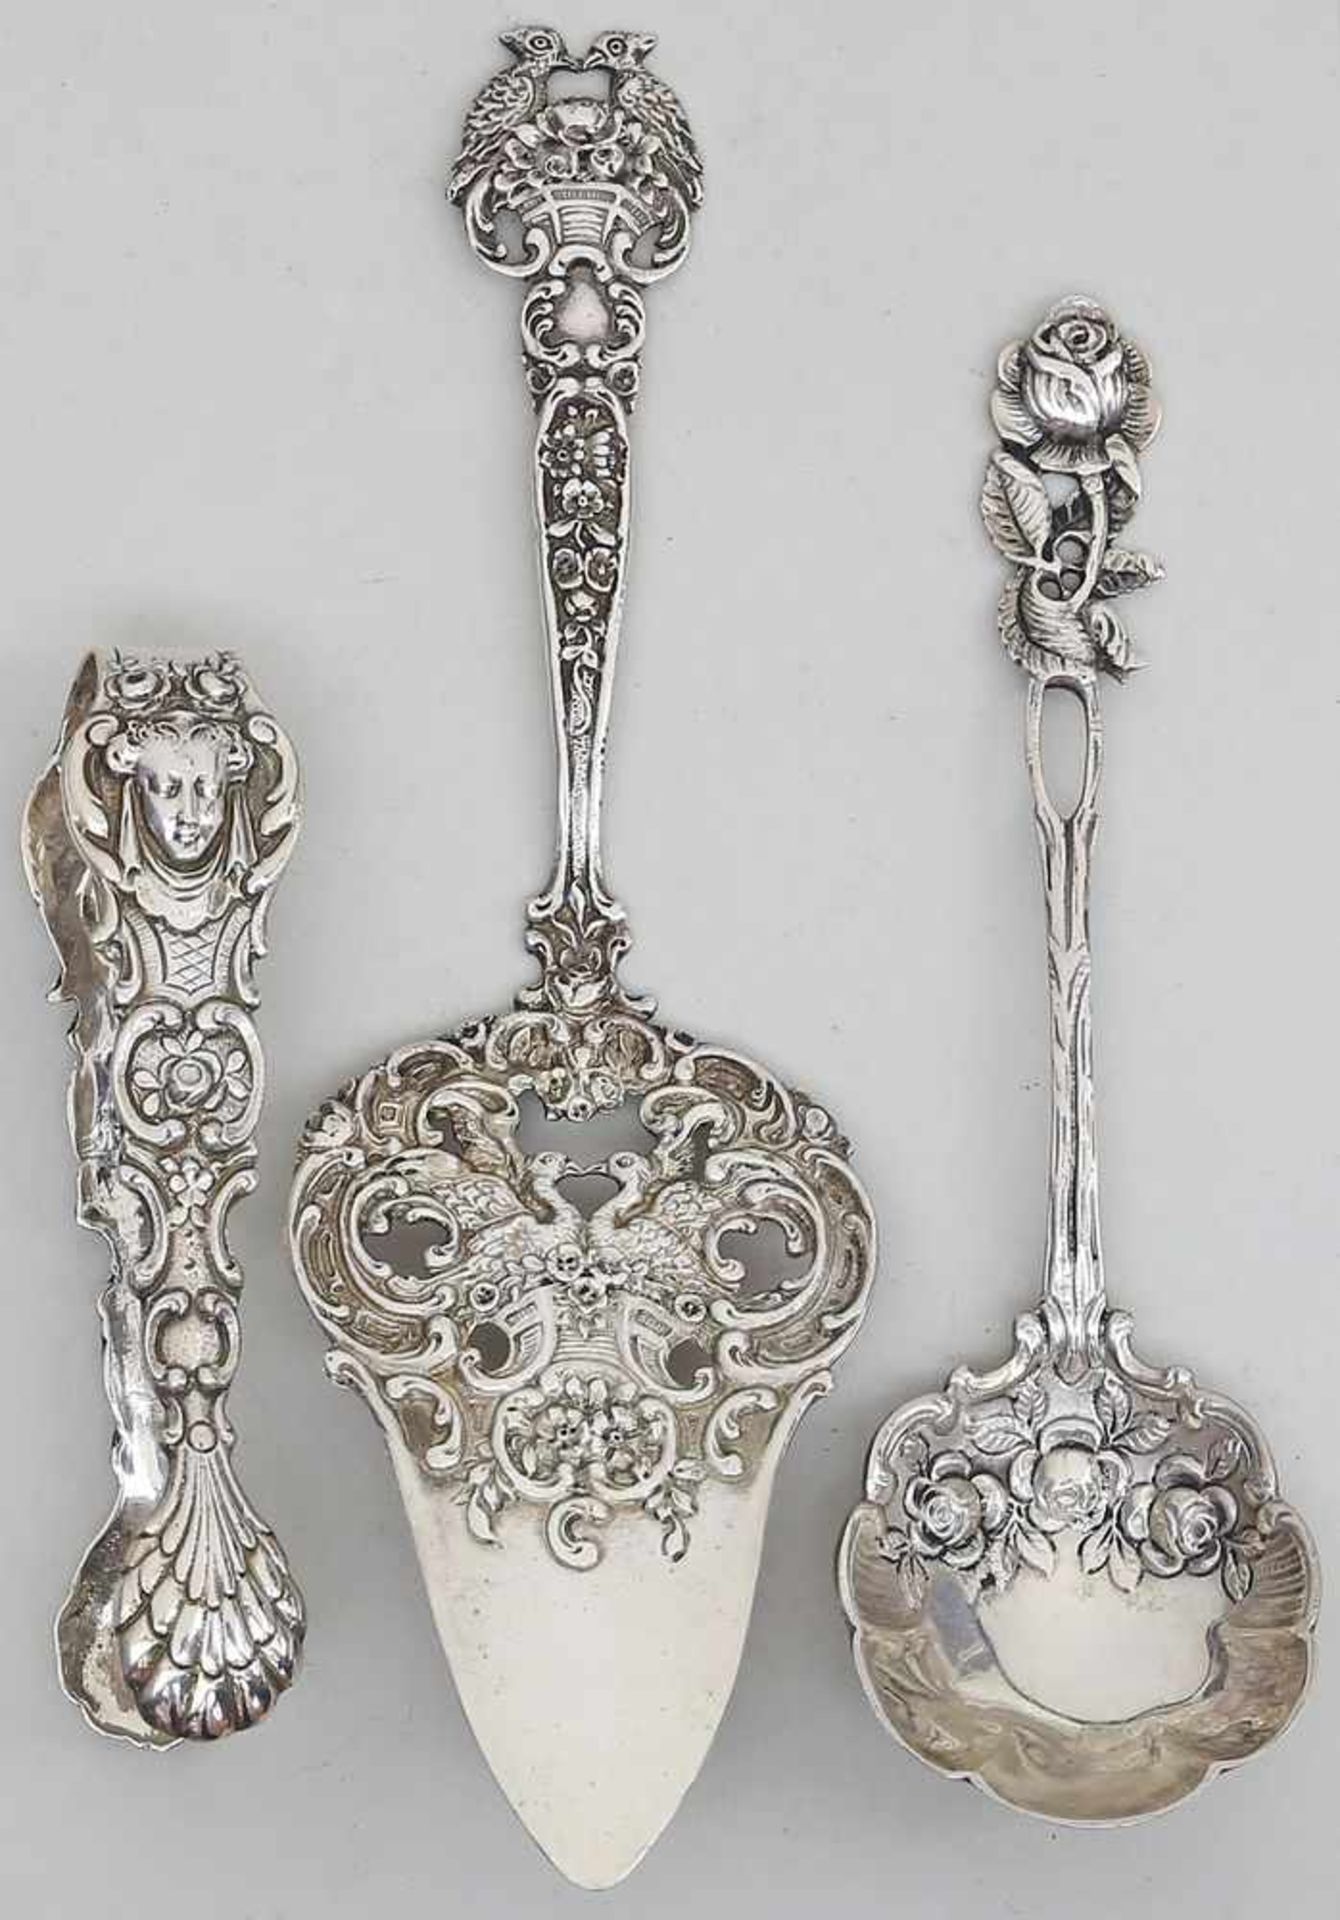 Zuckerzange, -löffel und Tortenheber.800/000 Silber, zusammen ca. 124 g. Florales, teils